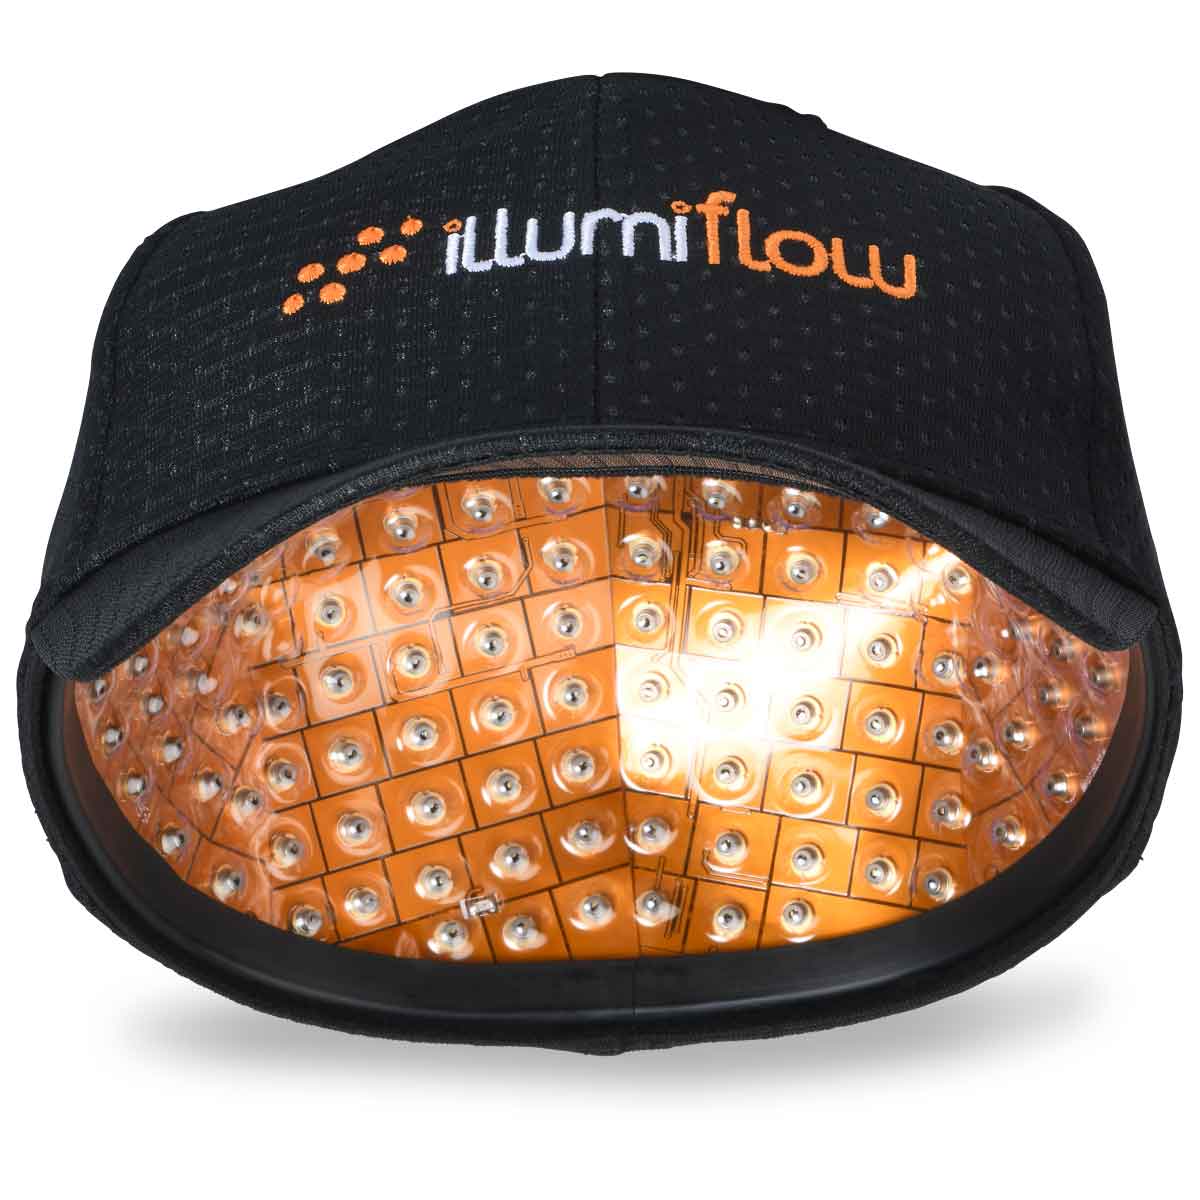 illumiflow 272 Laser Cap